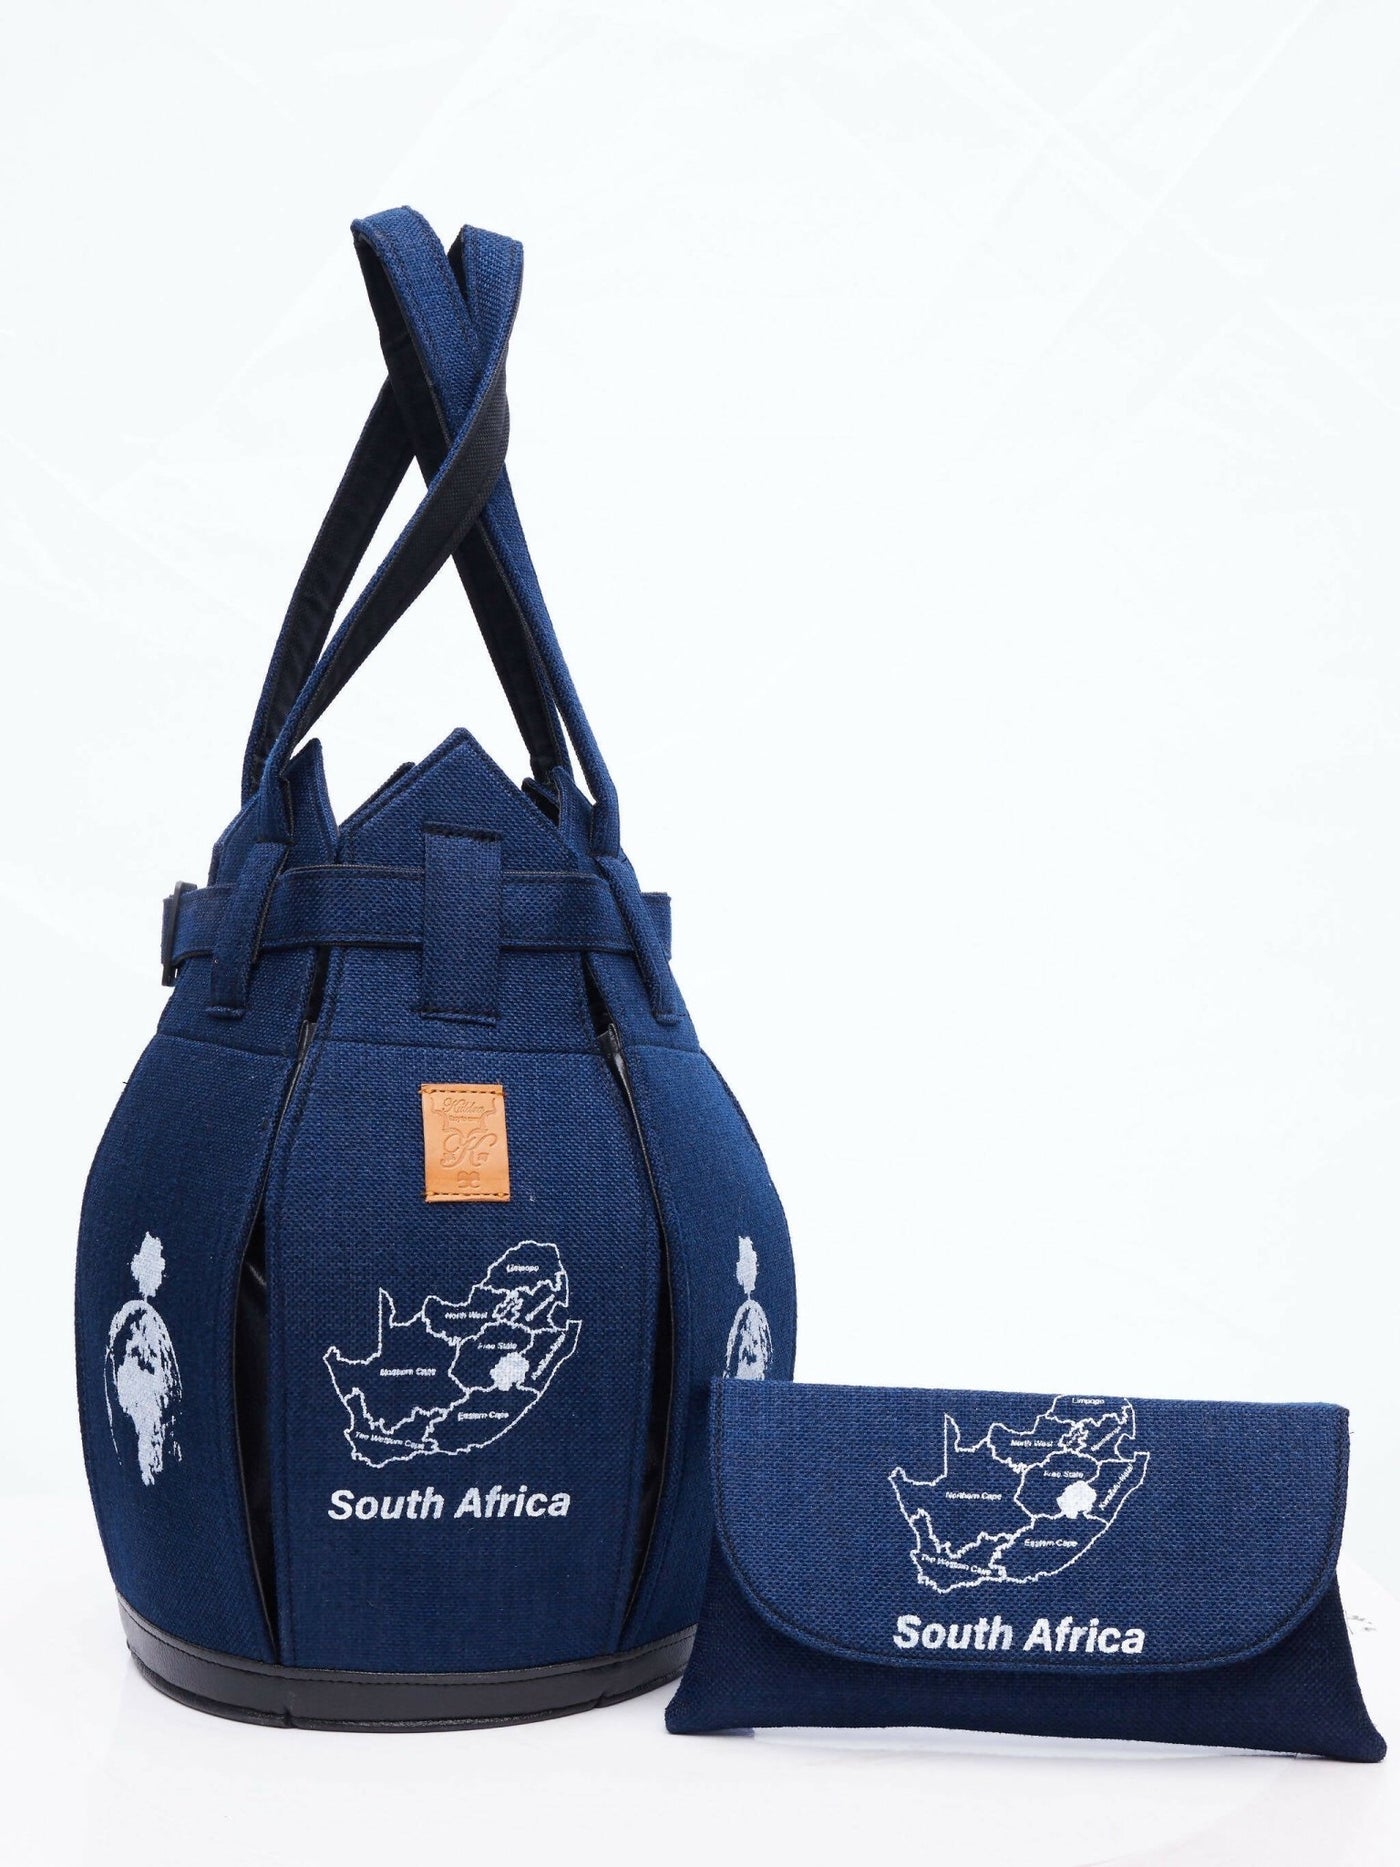 Kuldra Pineapple Spike Handbag South Africa - Blue - Shopzetu